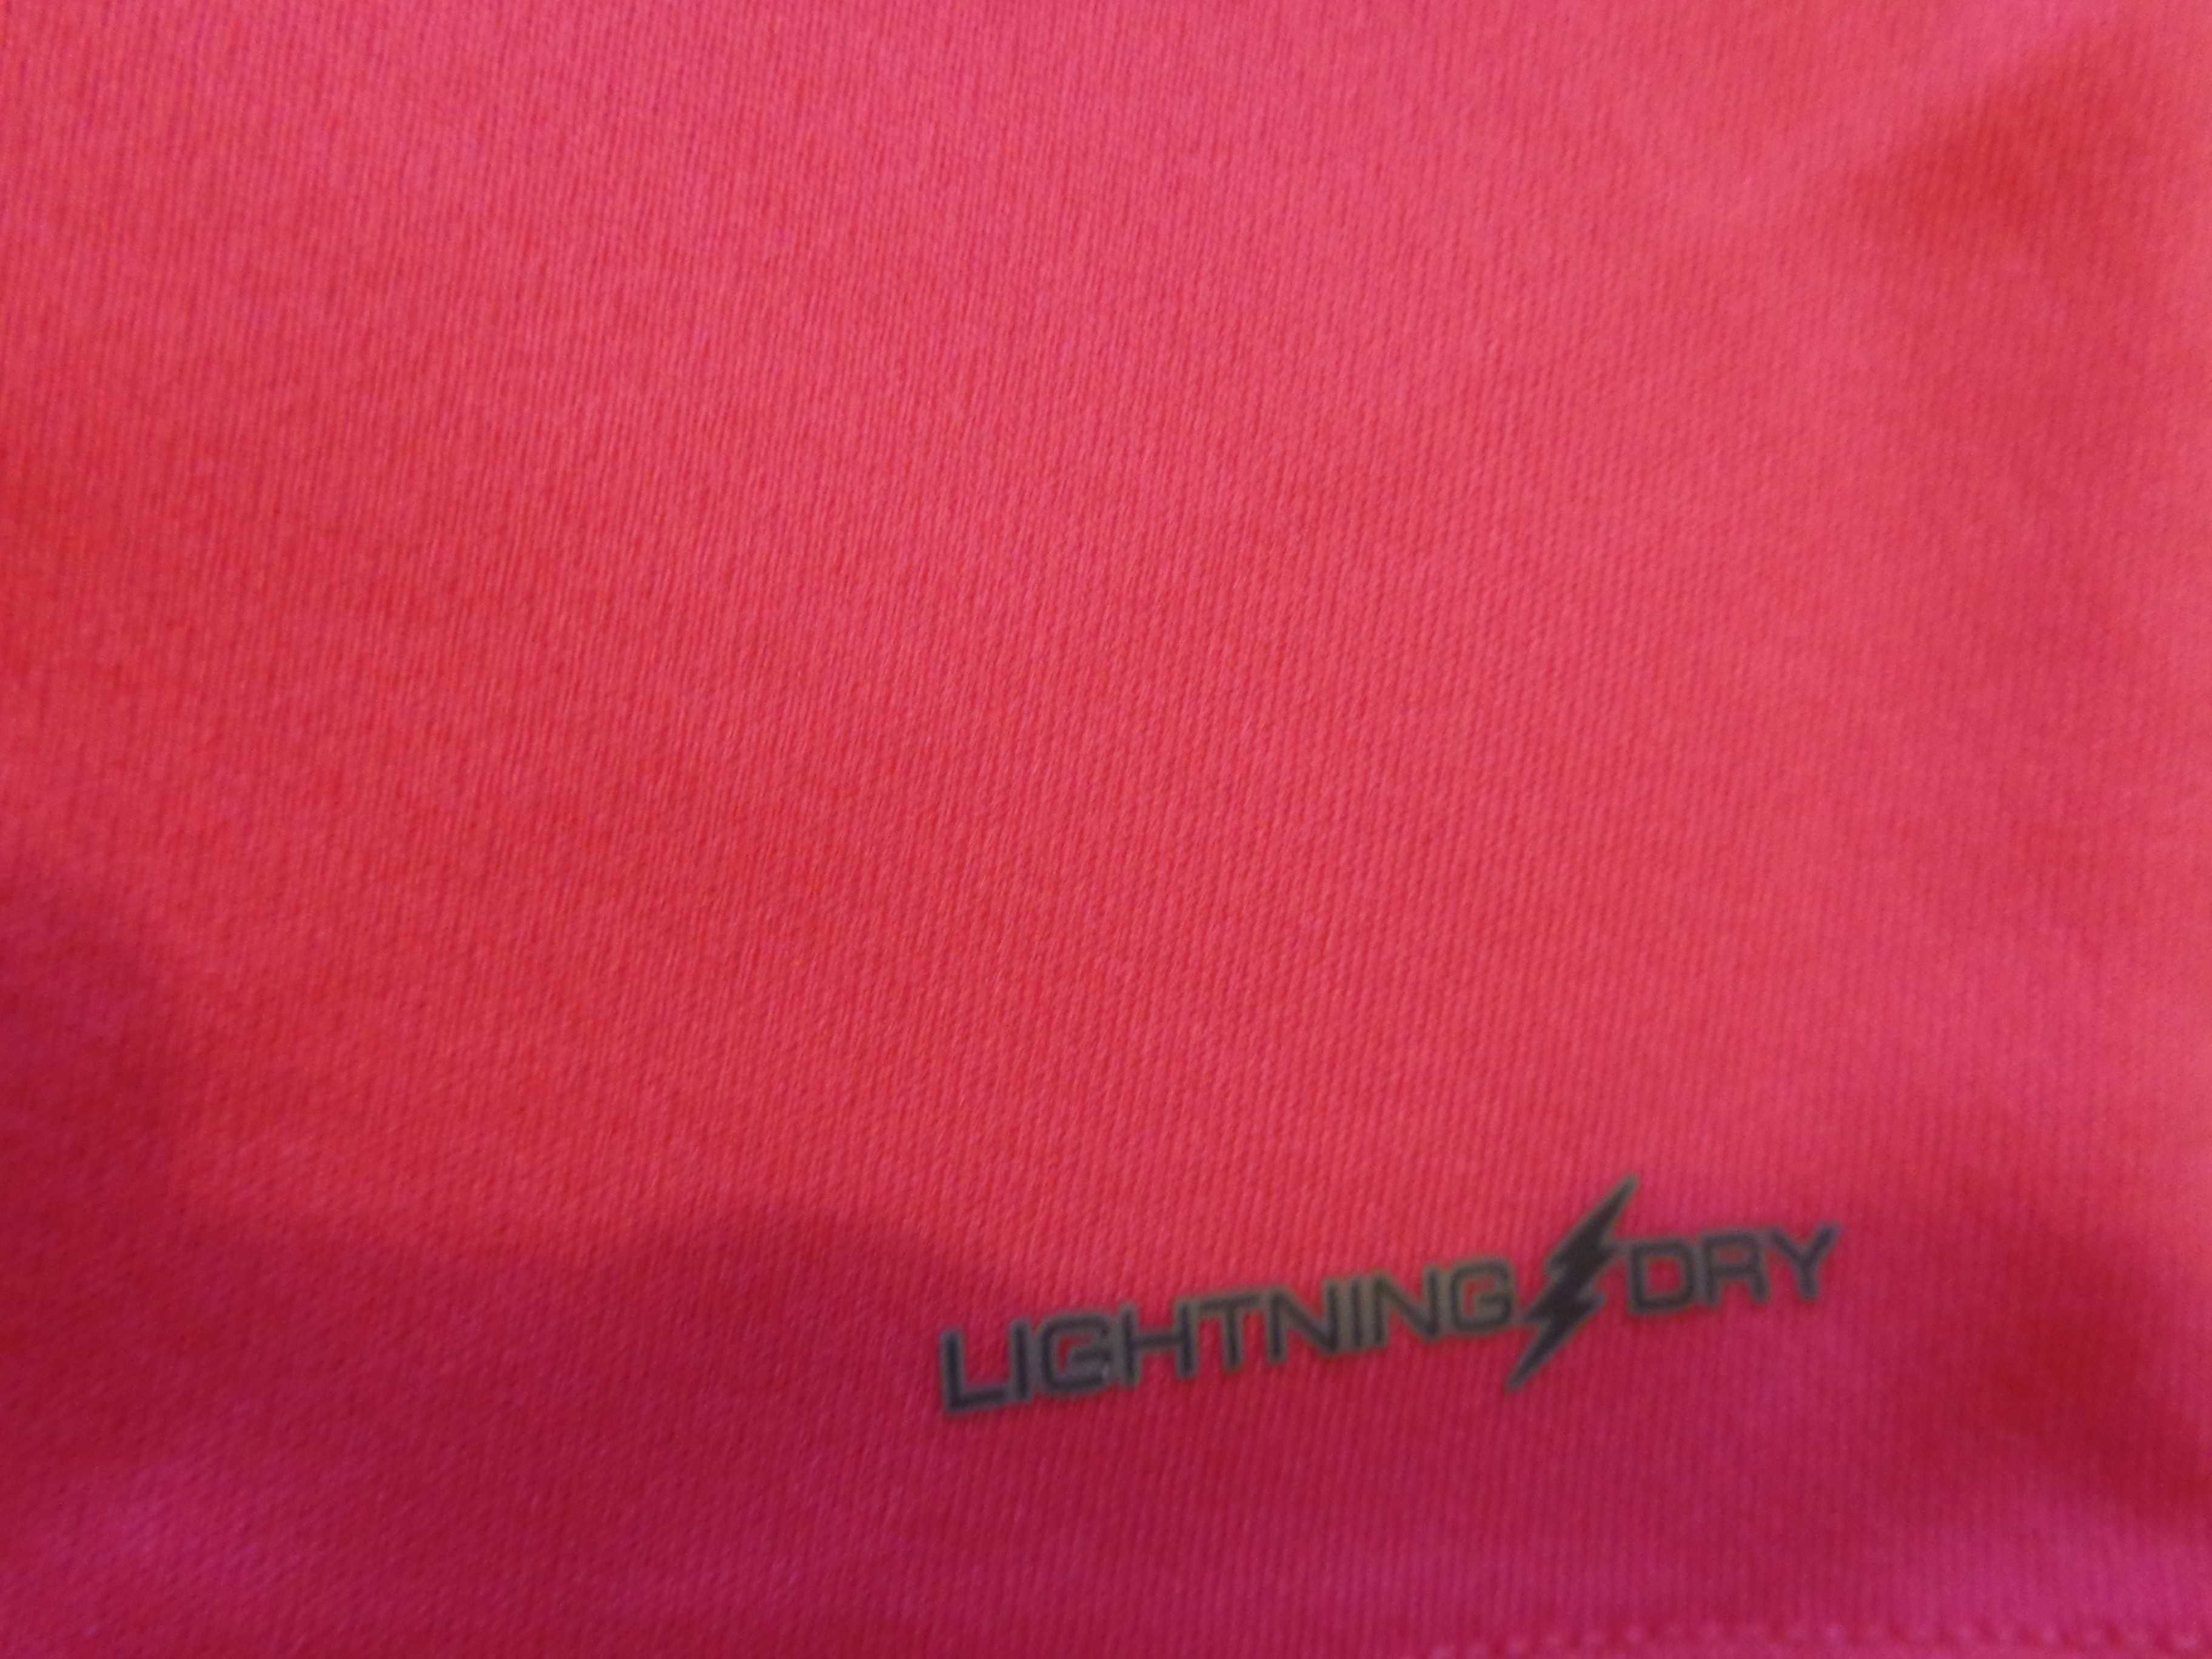 New Balance Lighting Dry damska bluza do biegania r.S/M stan jak nowa